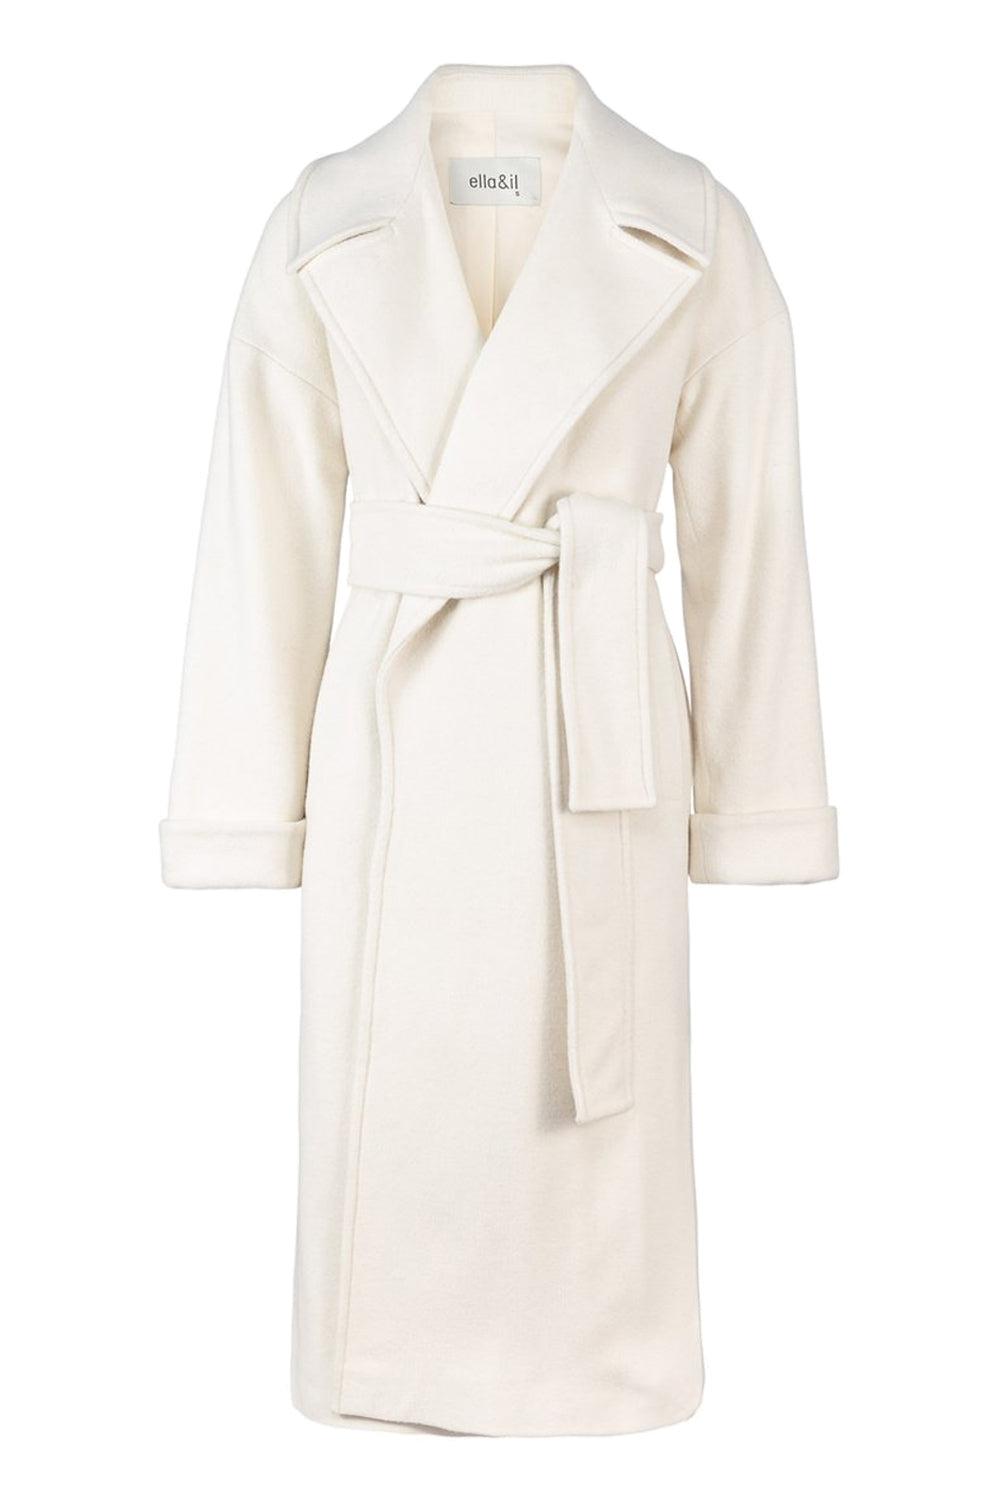 Adele Coat White